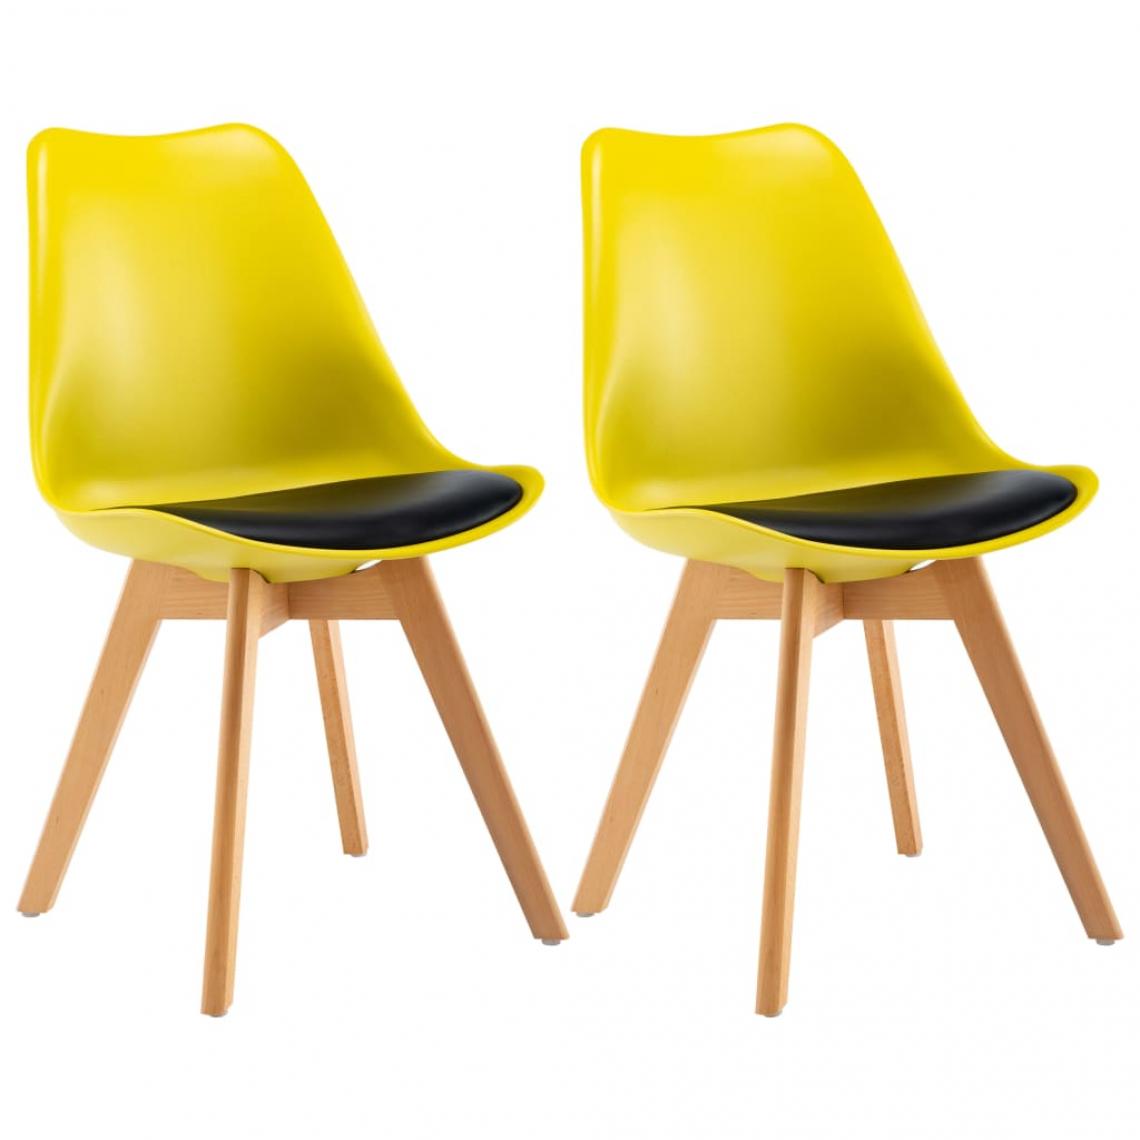 Decoshop26 - Lot de 2 chaises de salle à manger cuisine design rétro similicuir jaune et noir CDS020622 - Chaises